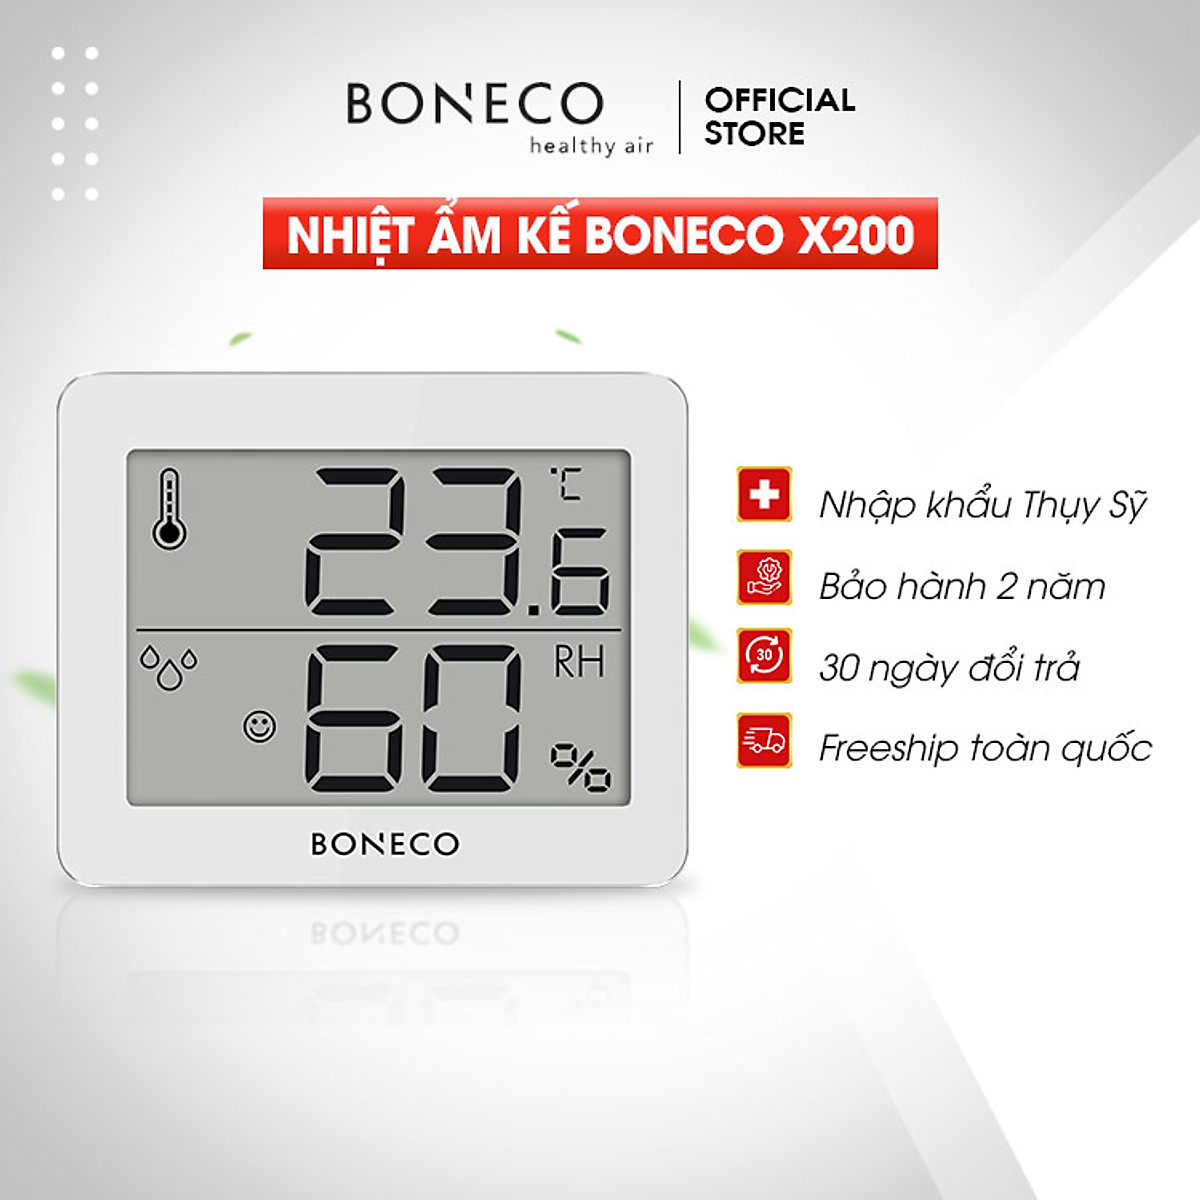 Nhiệt ẩm kế BONECO X200 (Nhập khẩu Thụy Sĩ)